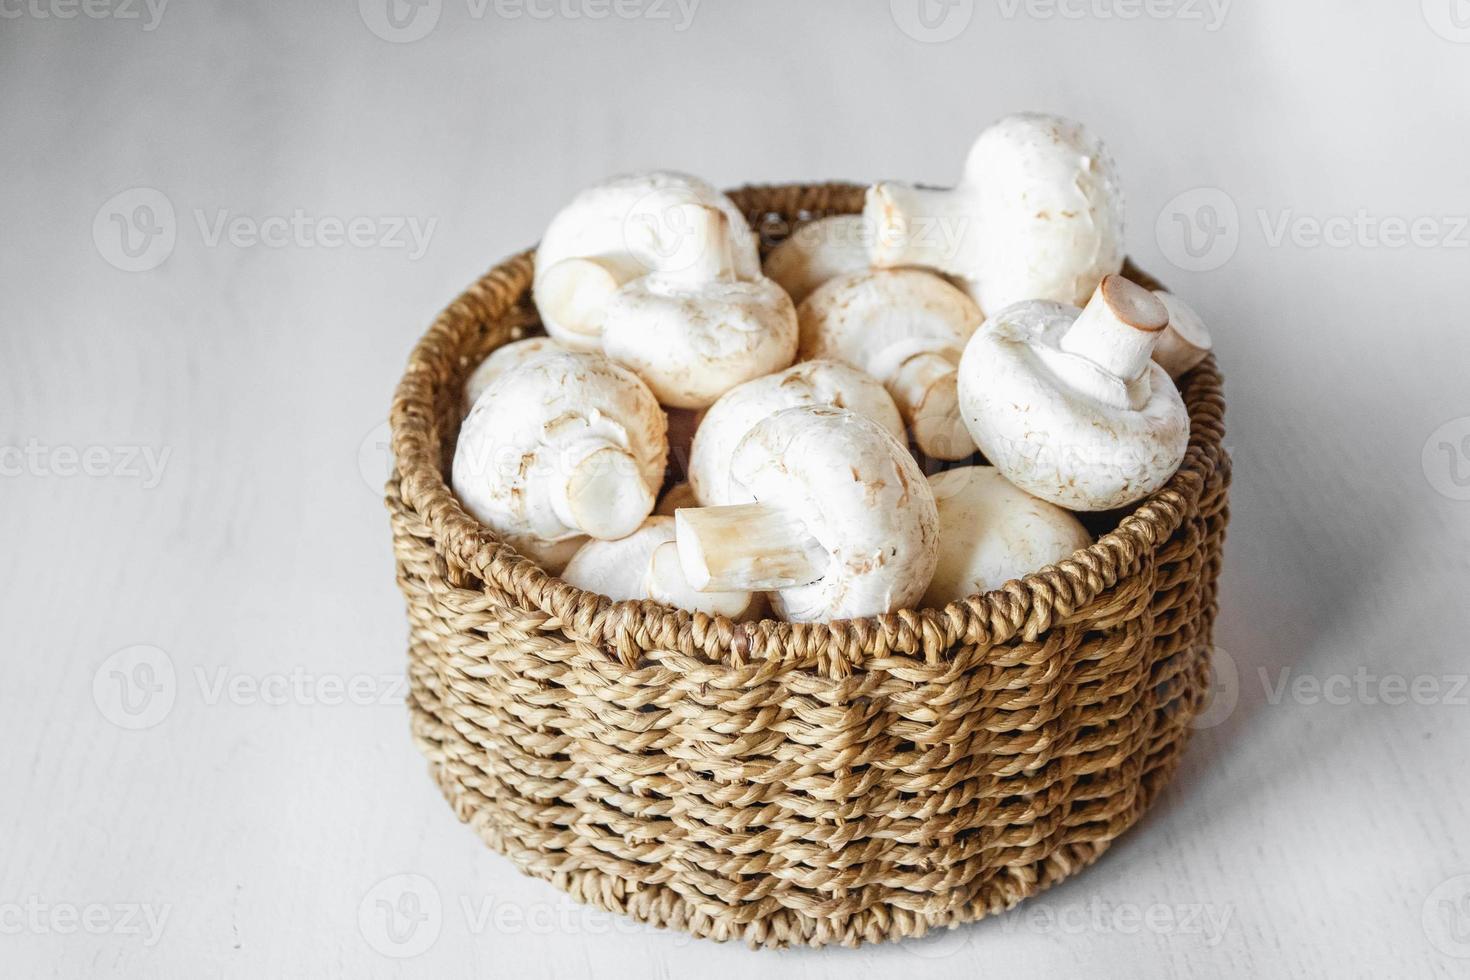 funghi champignon in un cesto di vimini rotondo su un tavolo di legno bianco foto